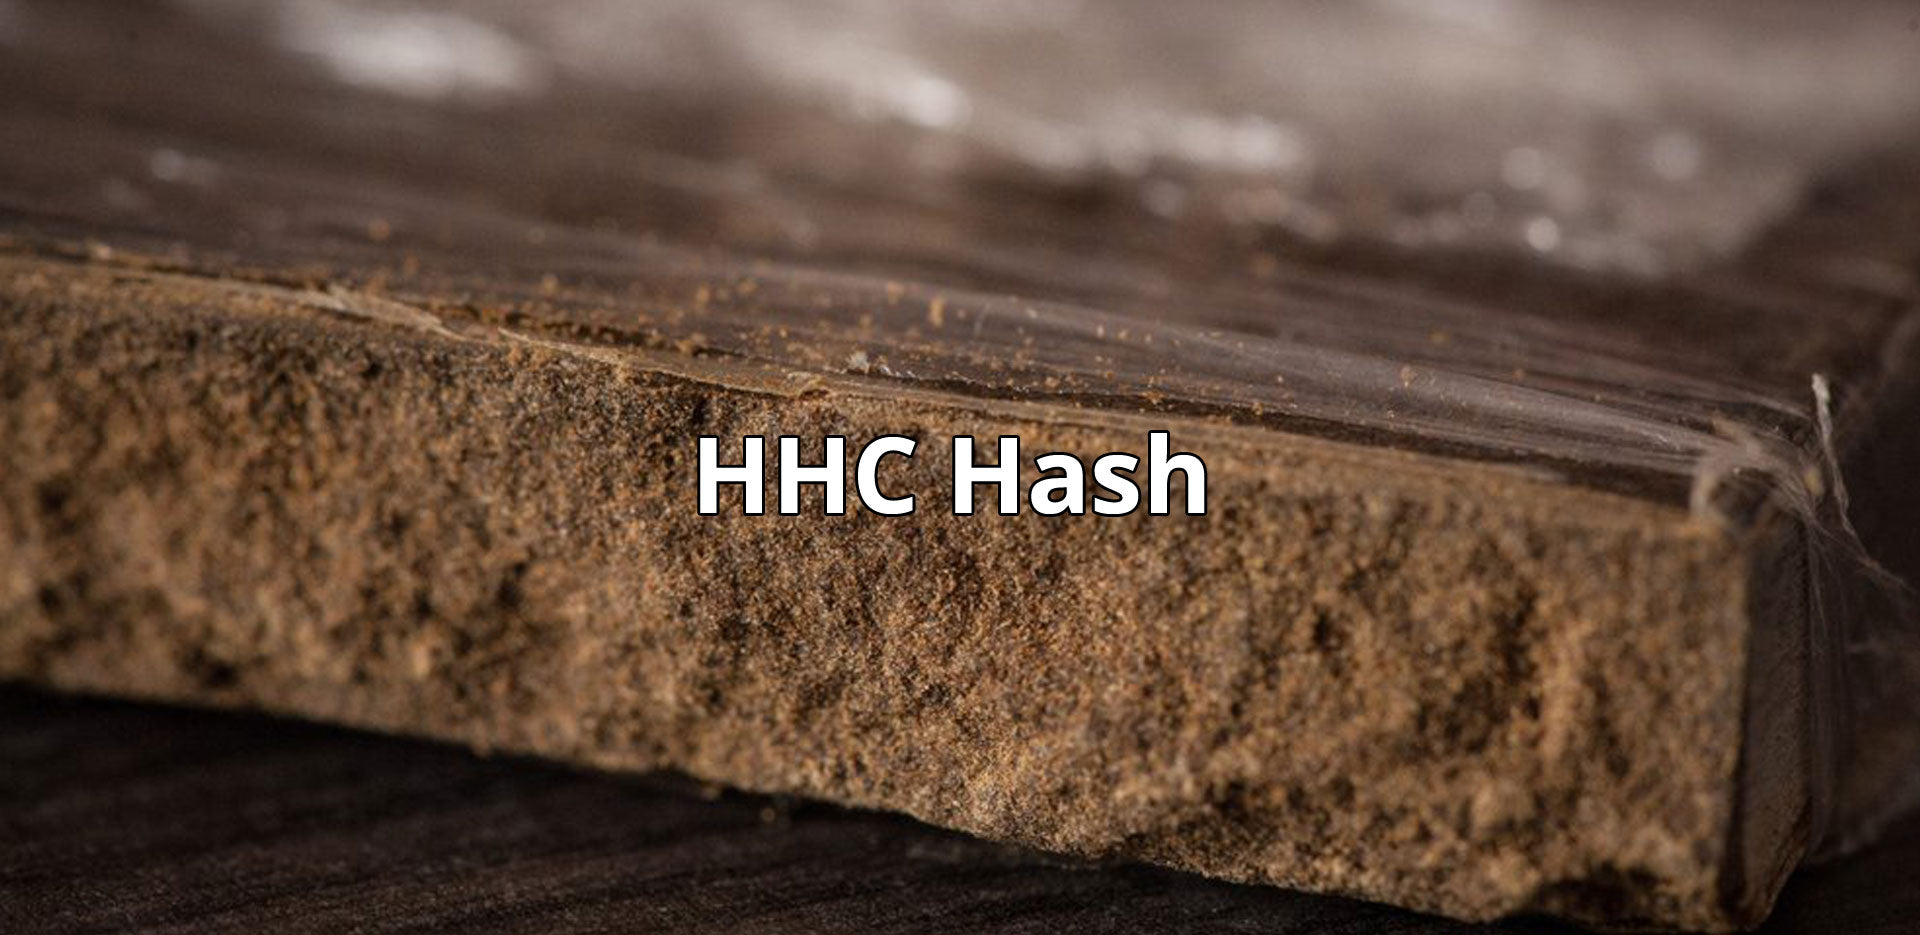 HHC Hash, extrem hochdosiert